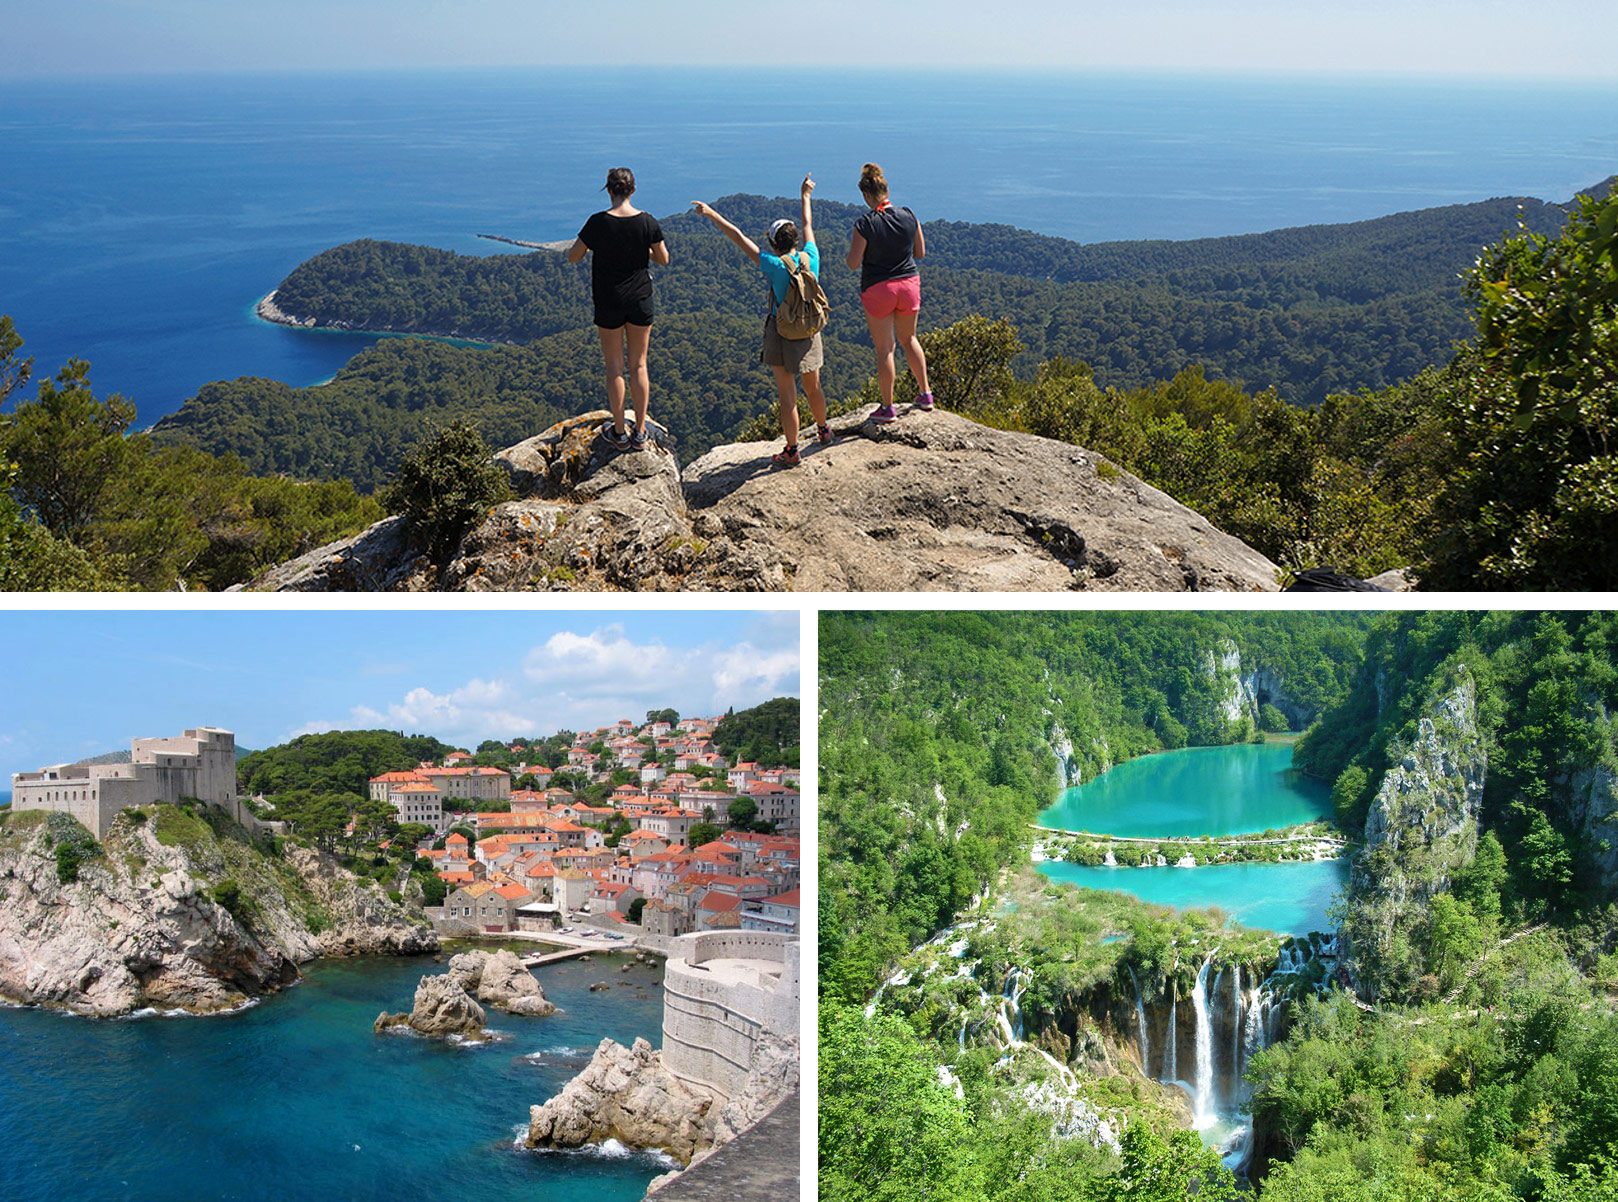 1) Randonnée dans le parc national de Mljet 2) Vue depuis les remparts de Dubrovnik en Dalmatie 3) Cascades dans le parc national des lacs de Plitvice